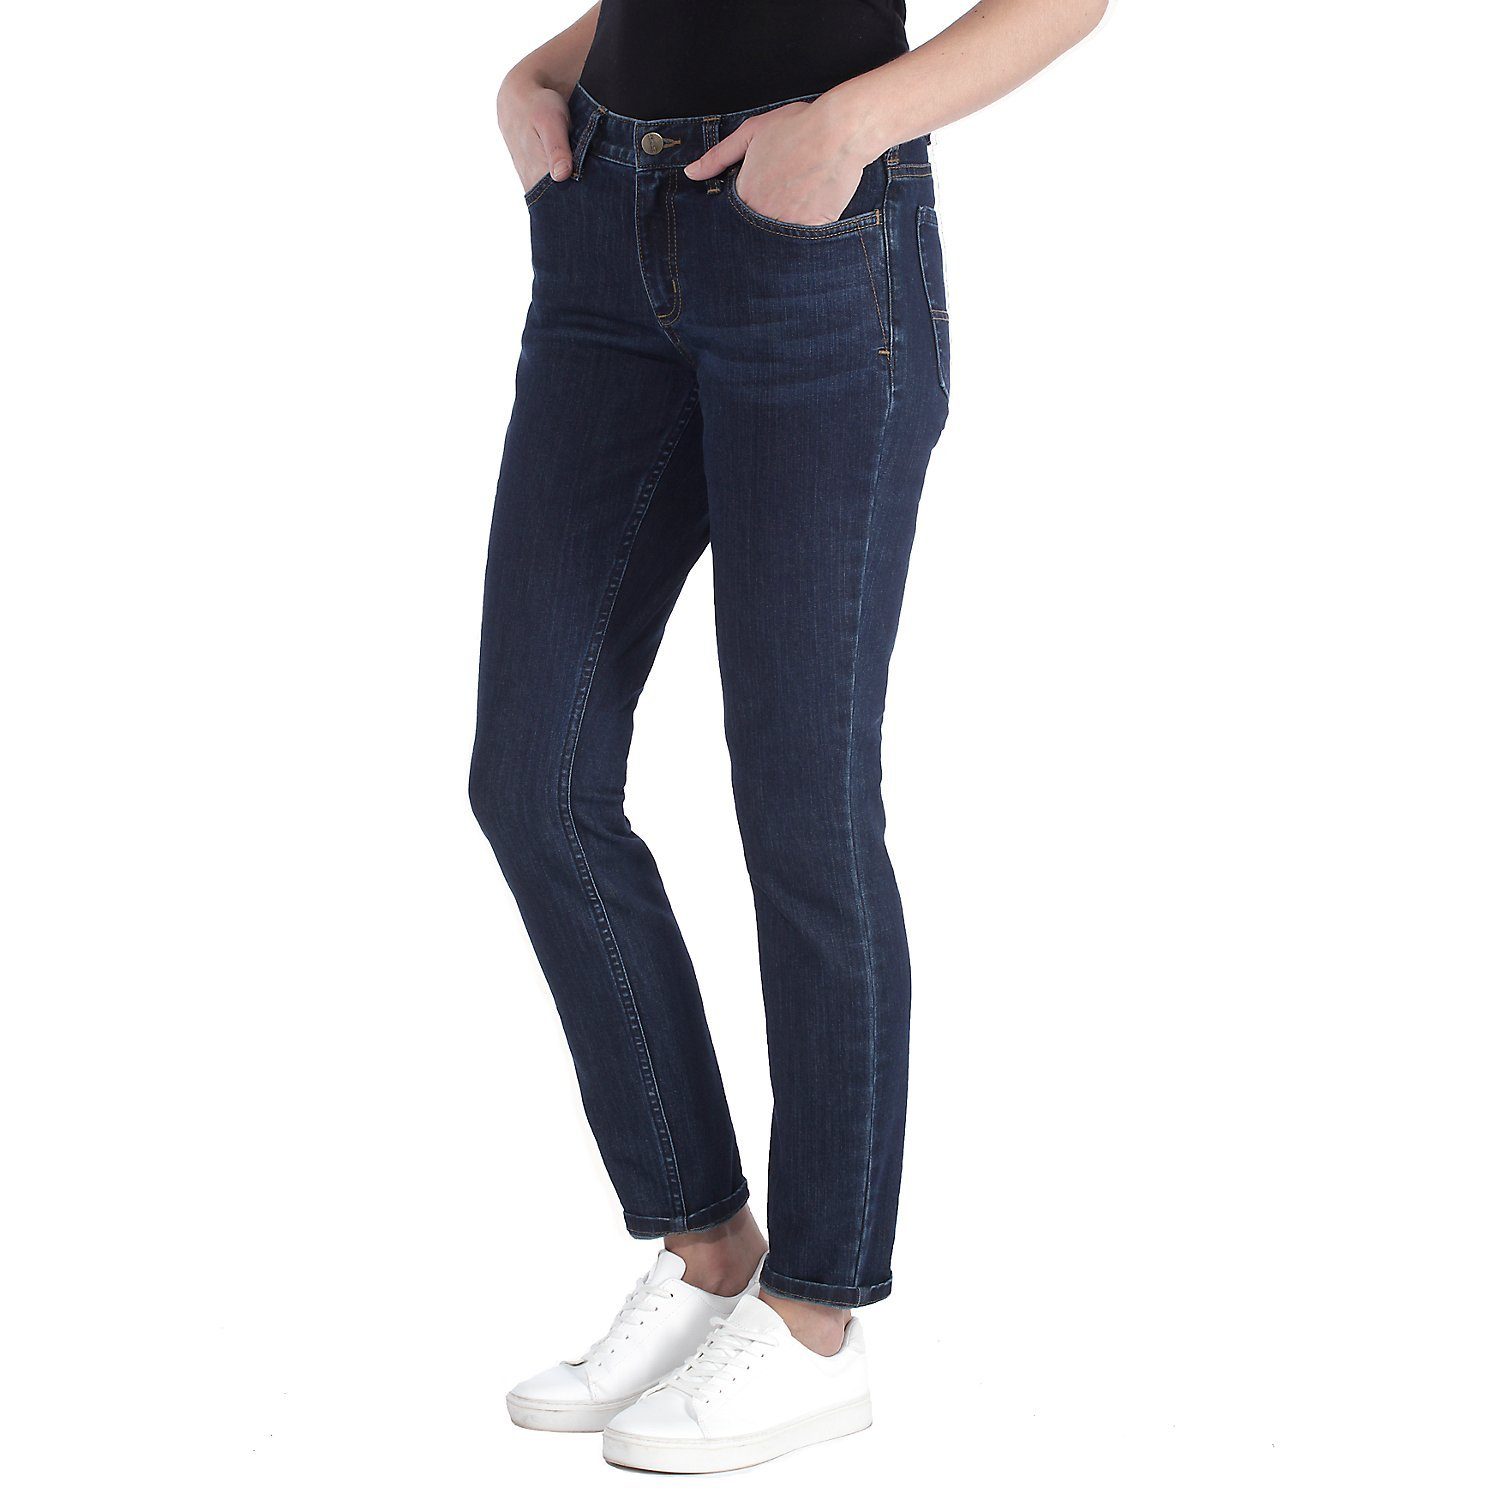 Damen, Carhartt Jeans Fit, Midnight Fit Skinny-fit-Jeans für Sky Slim Skinny Slim